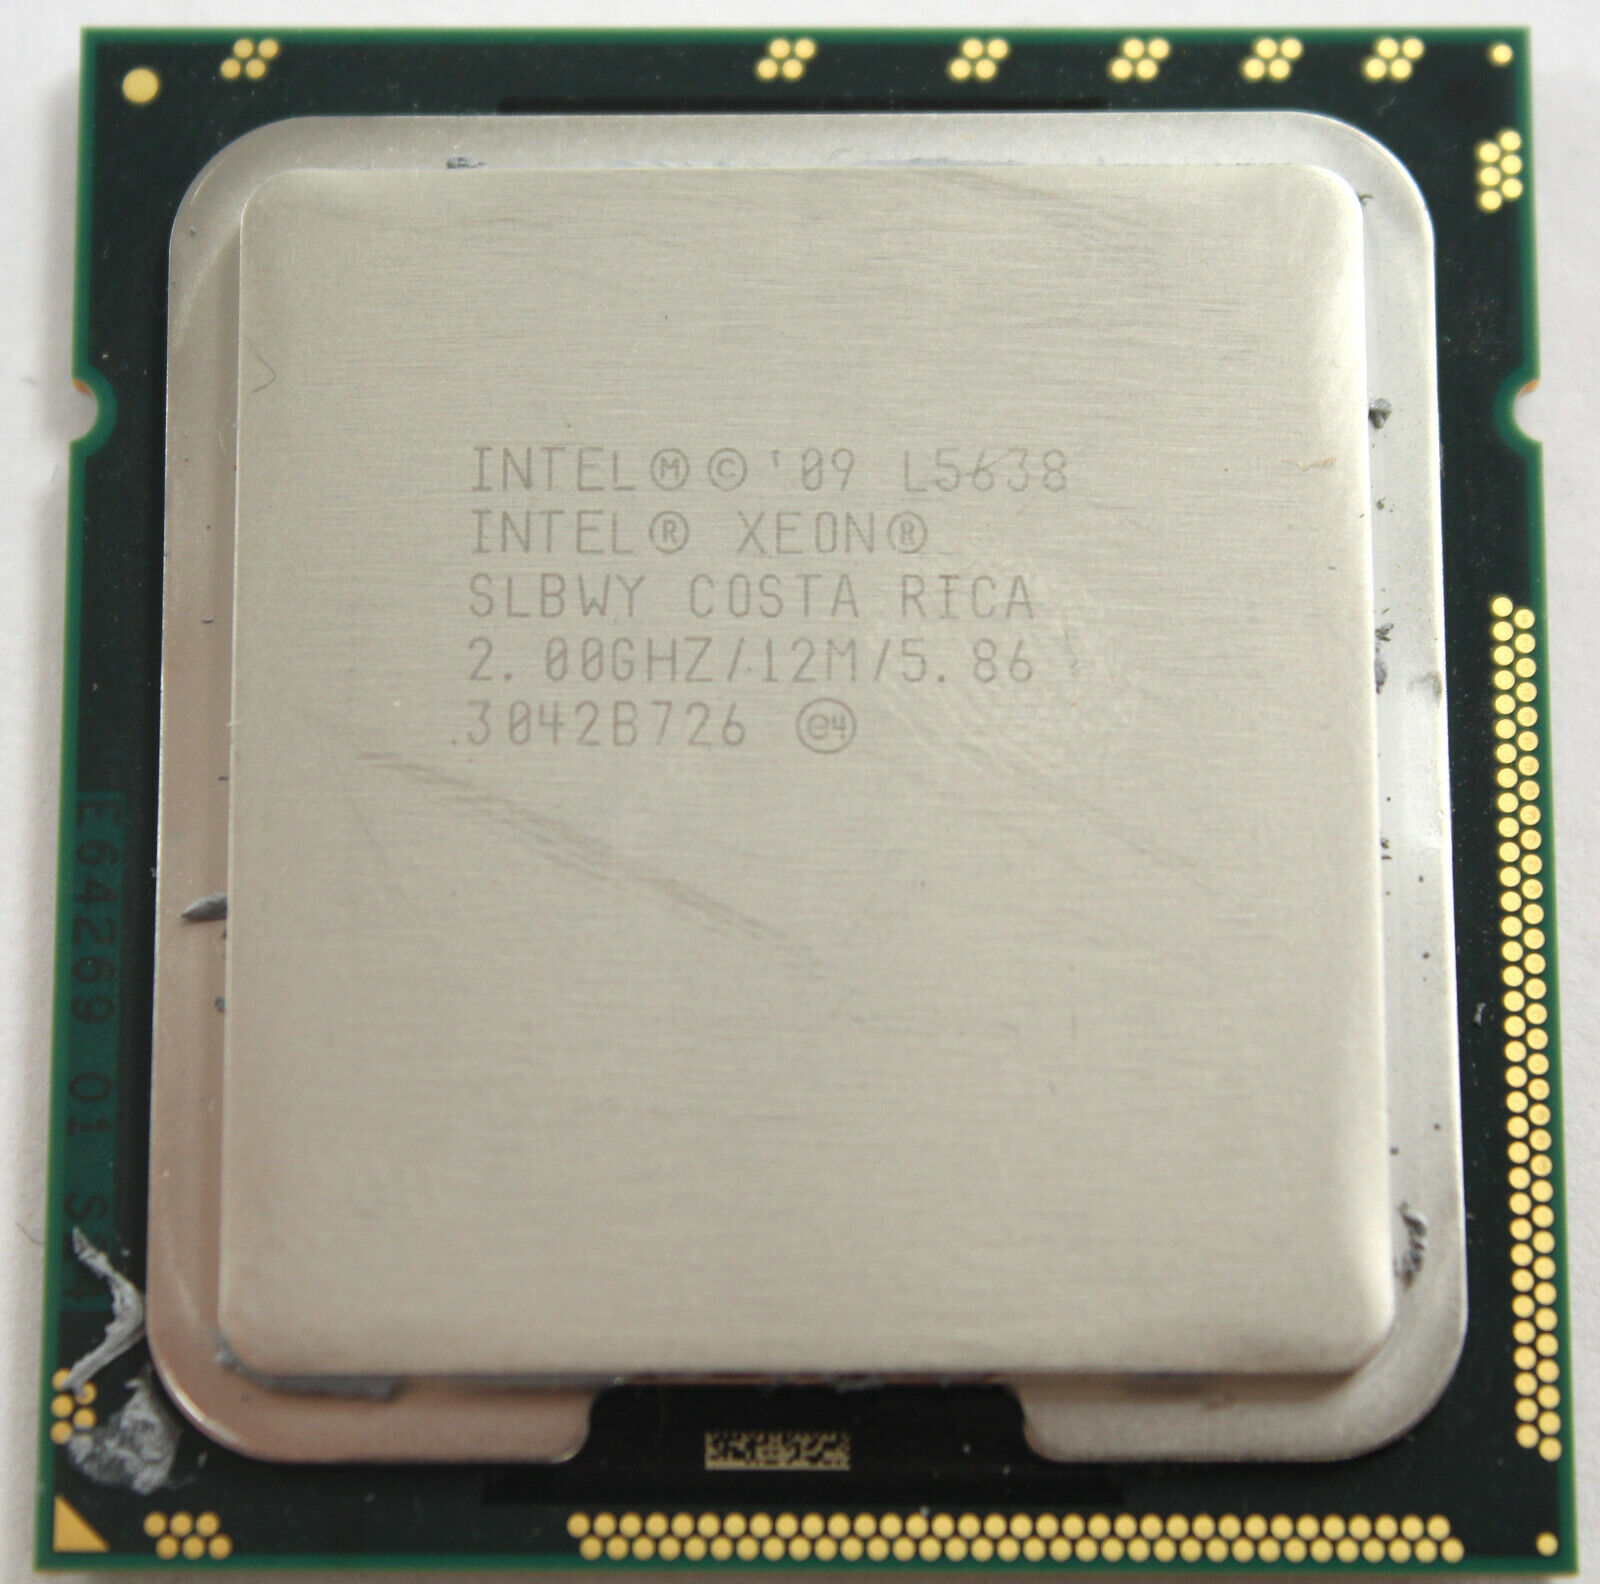 LOT of 28 Intel Xeon SLBWY Costa Rica 2.00GHZ/12M/5.86 L5638